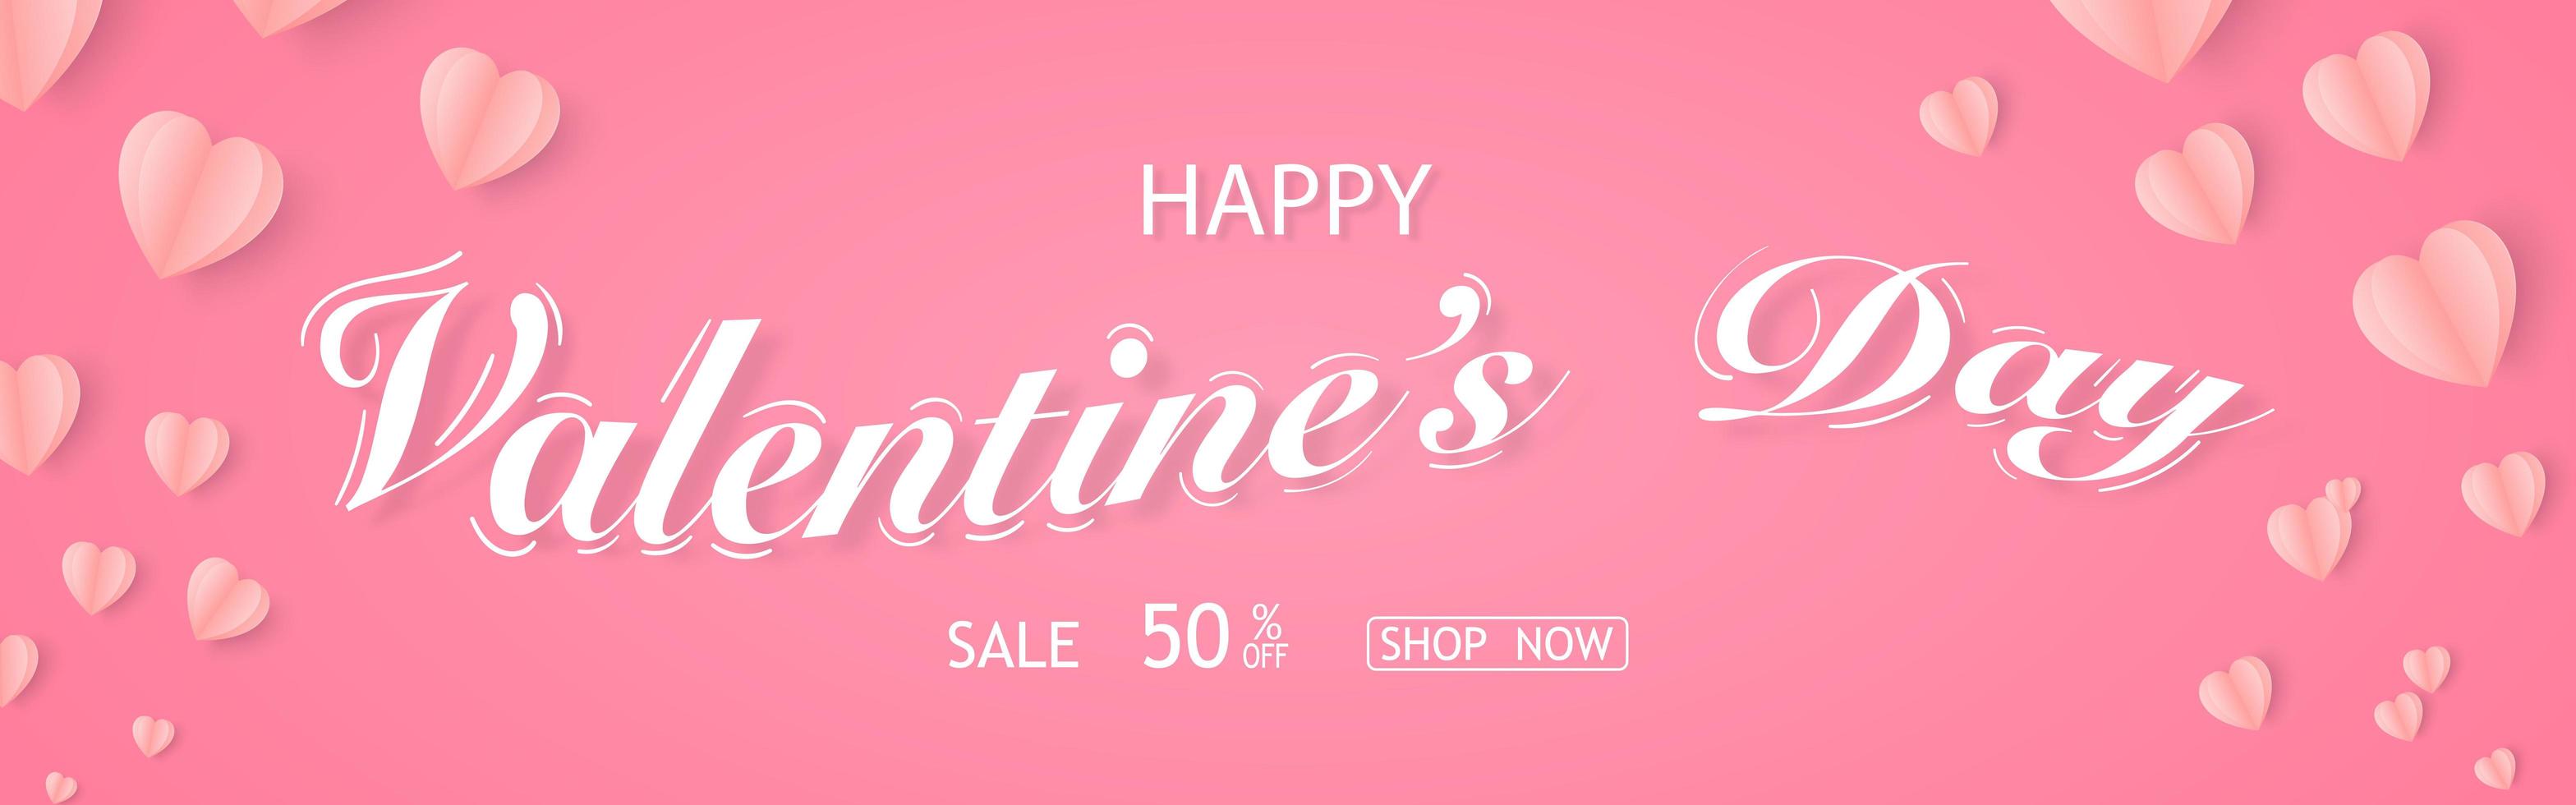 banner de venda do dia dos namorados com muitos corações e modelo de compra vetor